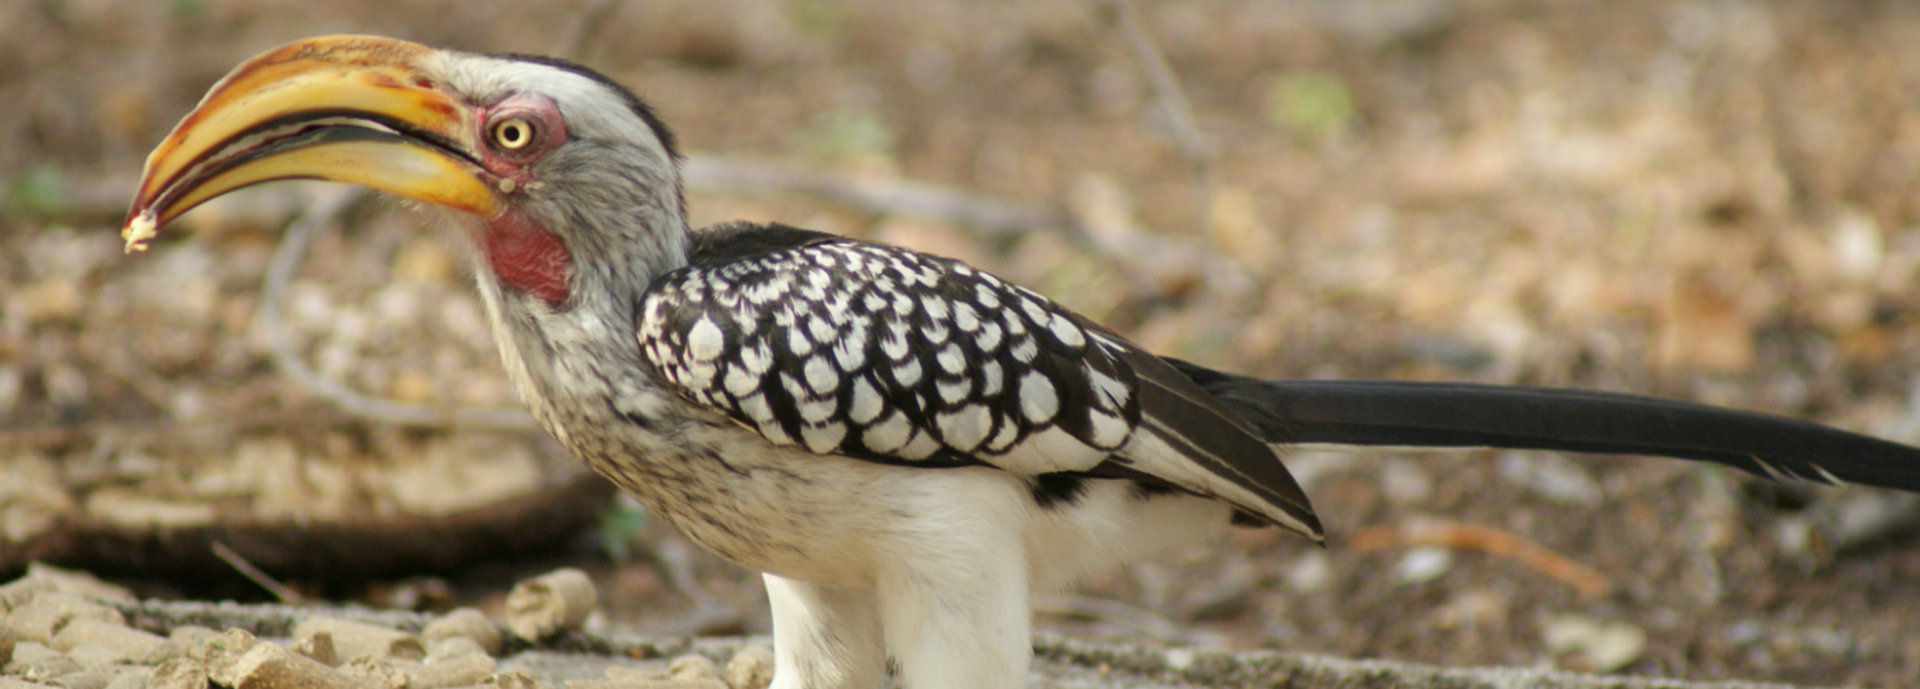 An image of a Hornbill